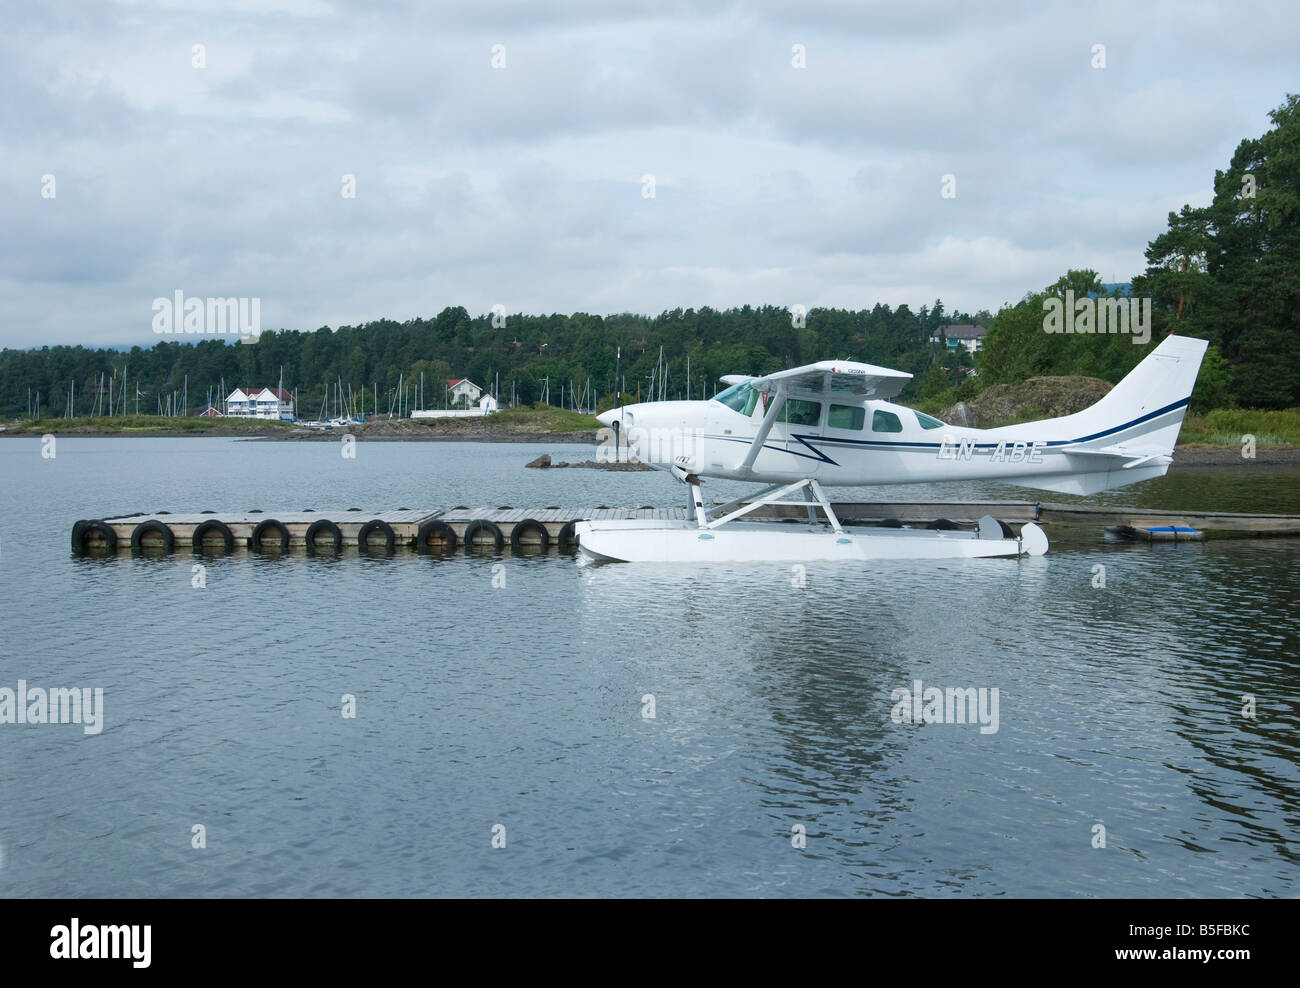 Cessna 210g 206 blanc amarré à Infos une partie de l'Oslofjord près d'Oslo Banque D'Images